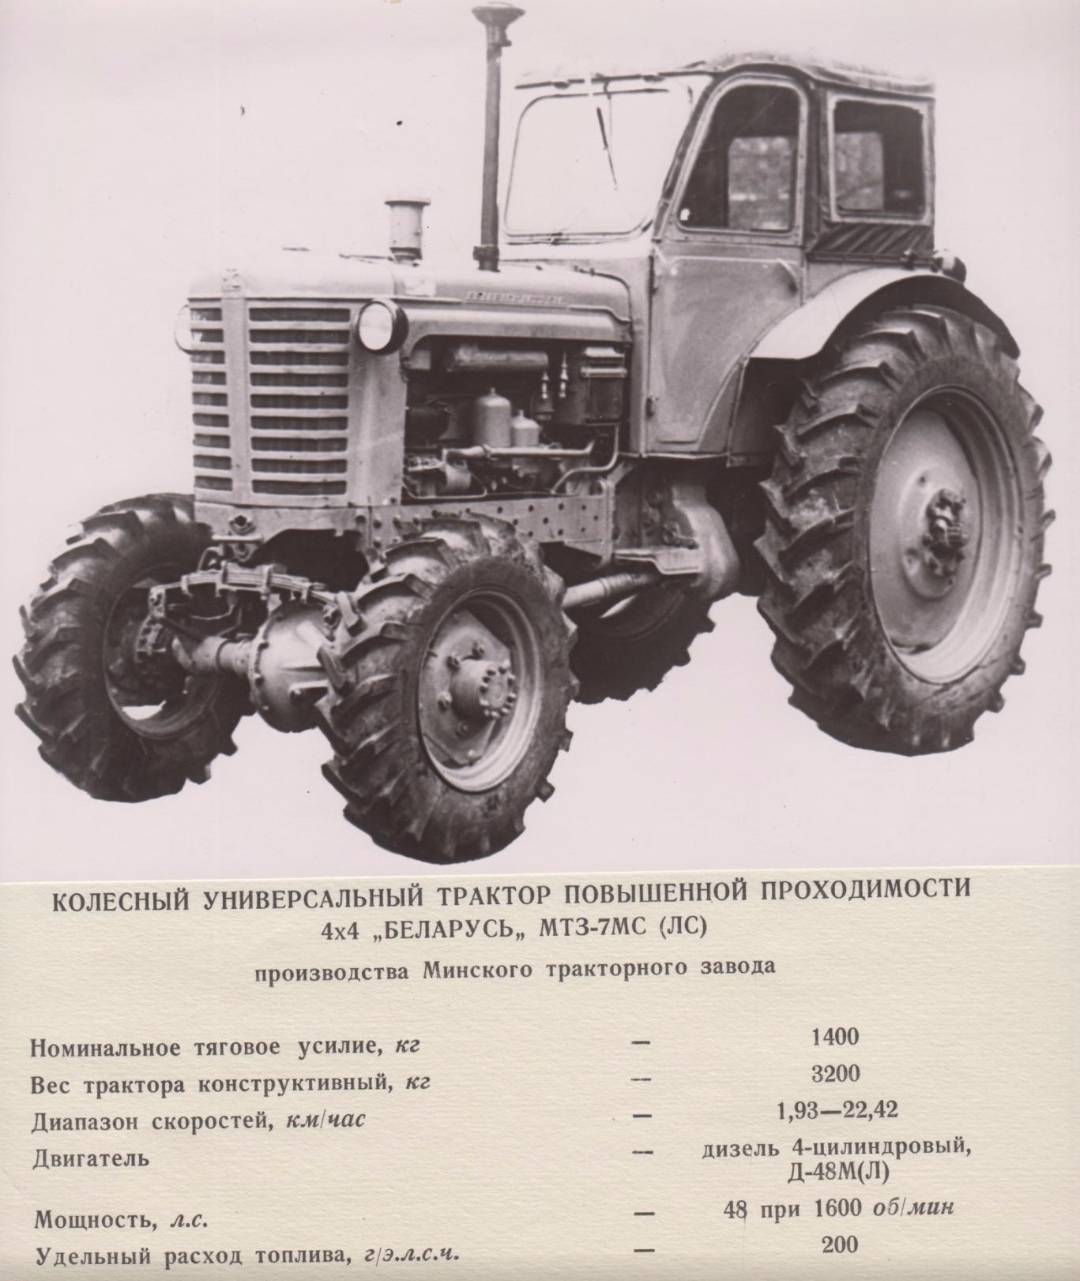 Популярные трактора беларусь мтз-50 и мтз-52. описание, характеристики, видео